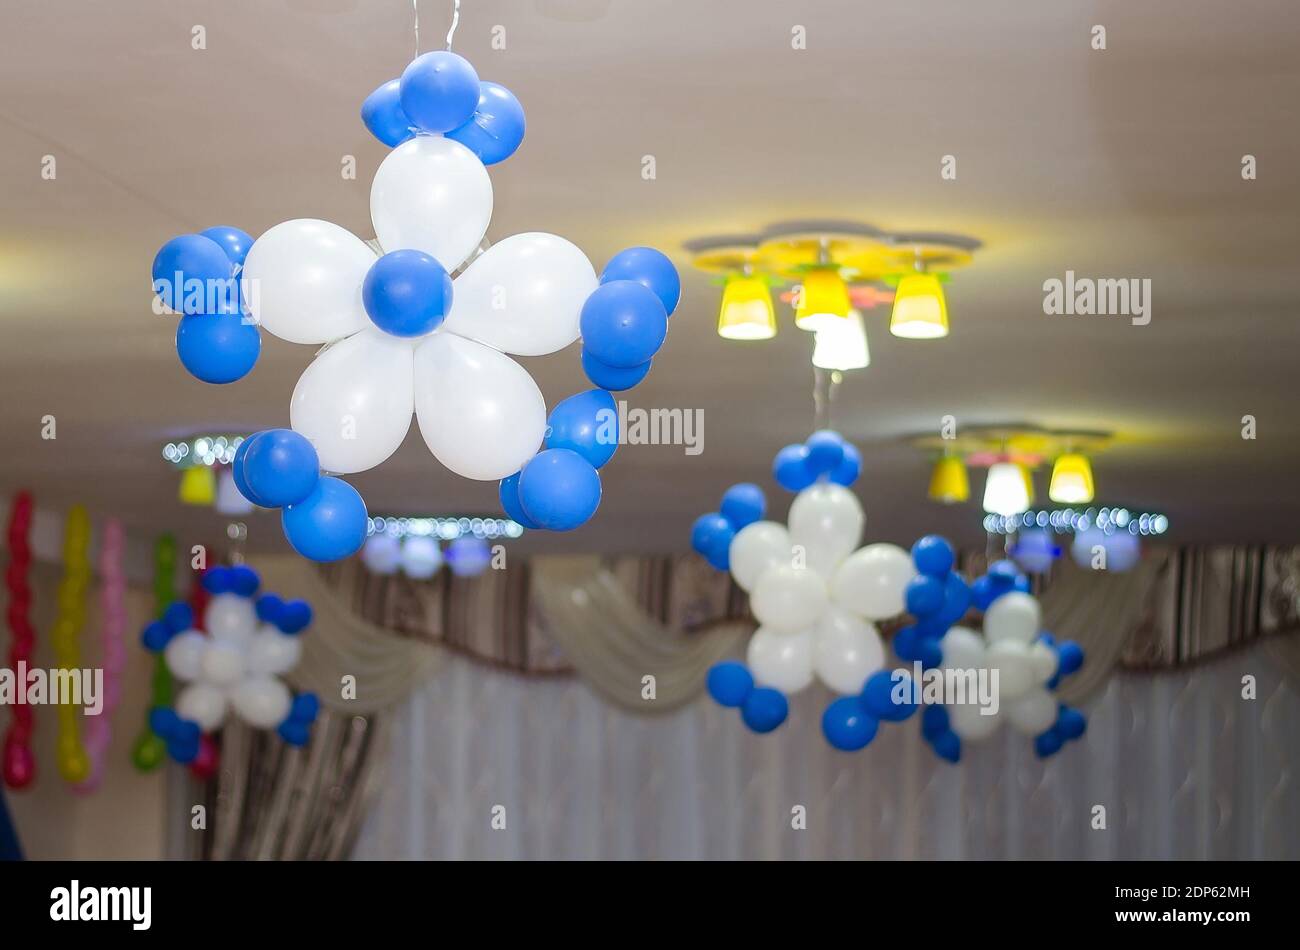 Copos de nieve de globos blancos y azules adornan el techo la sala de fiestas Foto de stock